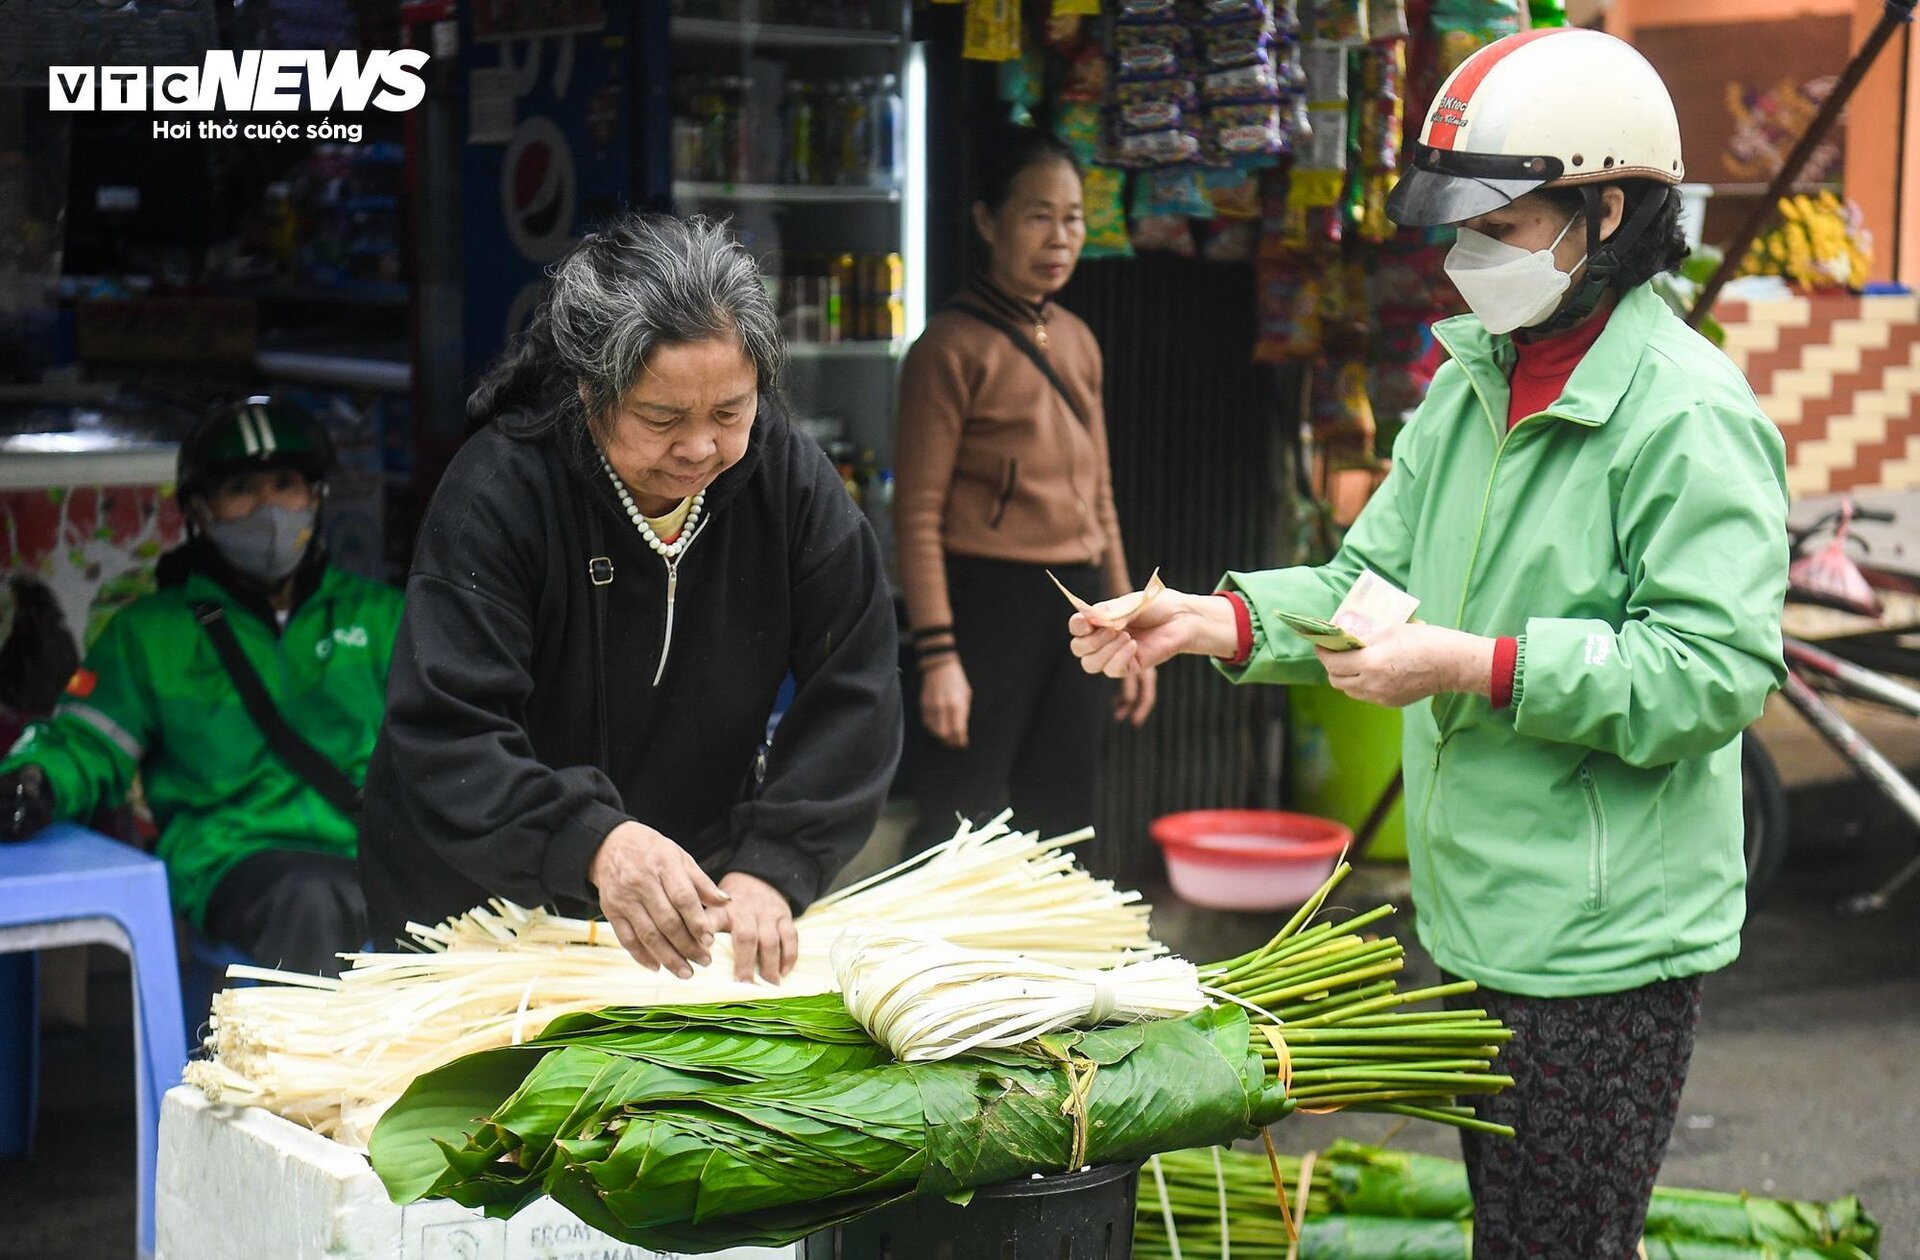 Chợ lá dong lâu đời nhất Hà Nội nhộn nhịp ngày giáp Tết - Ảnh 3.